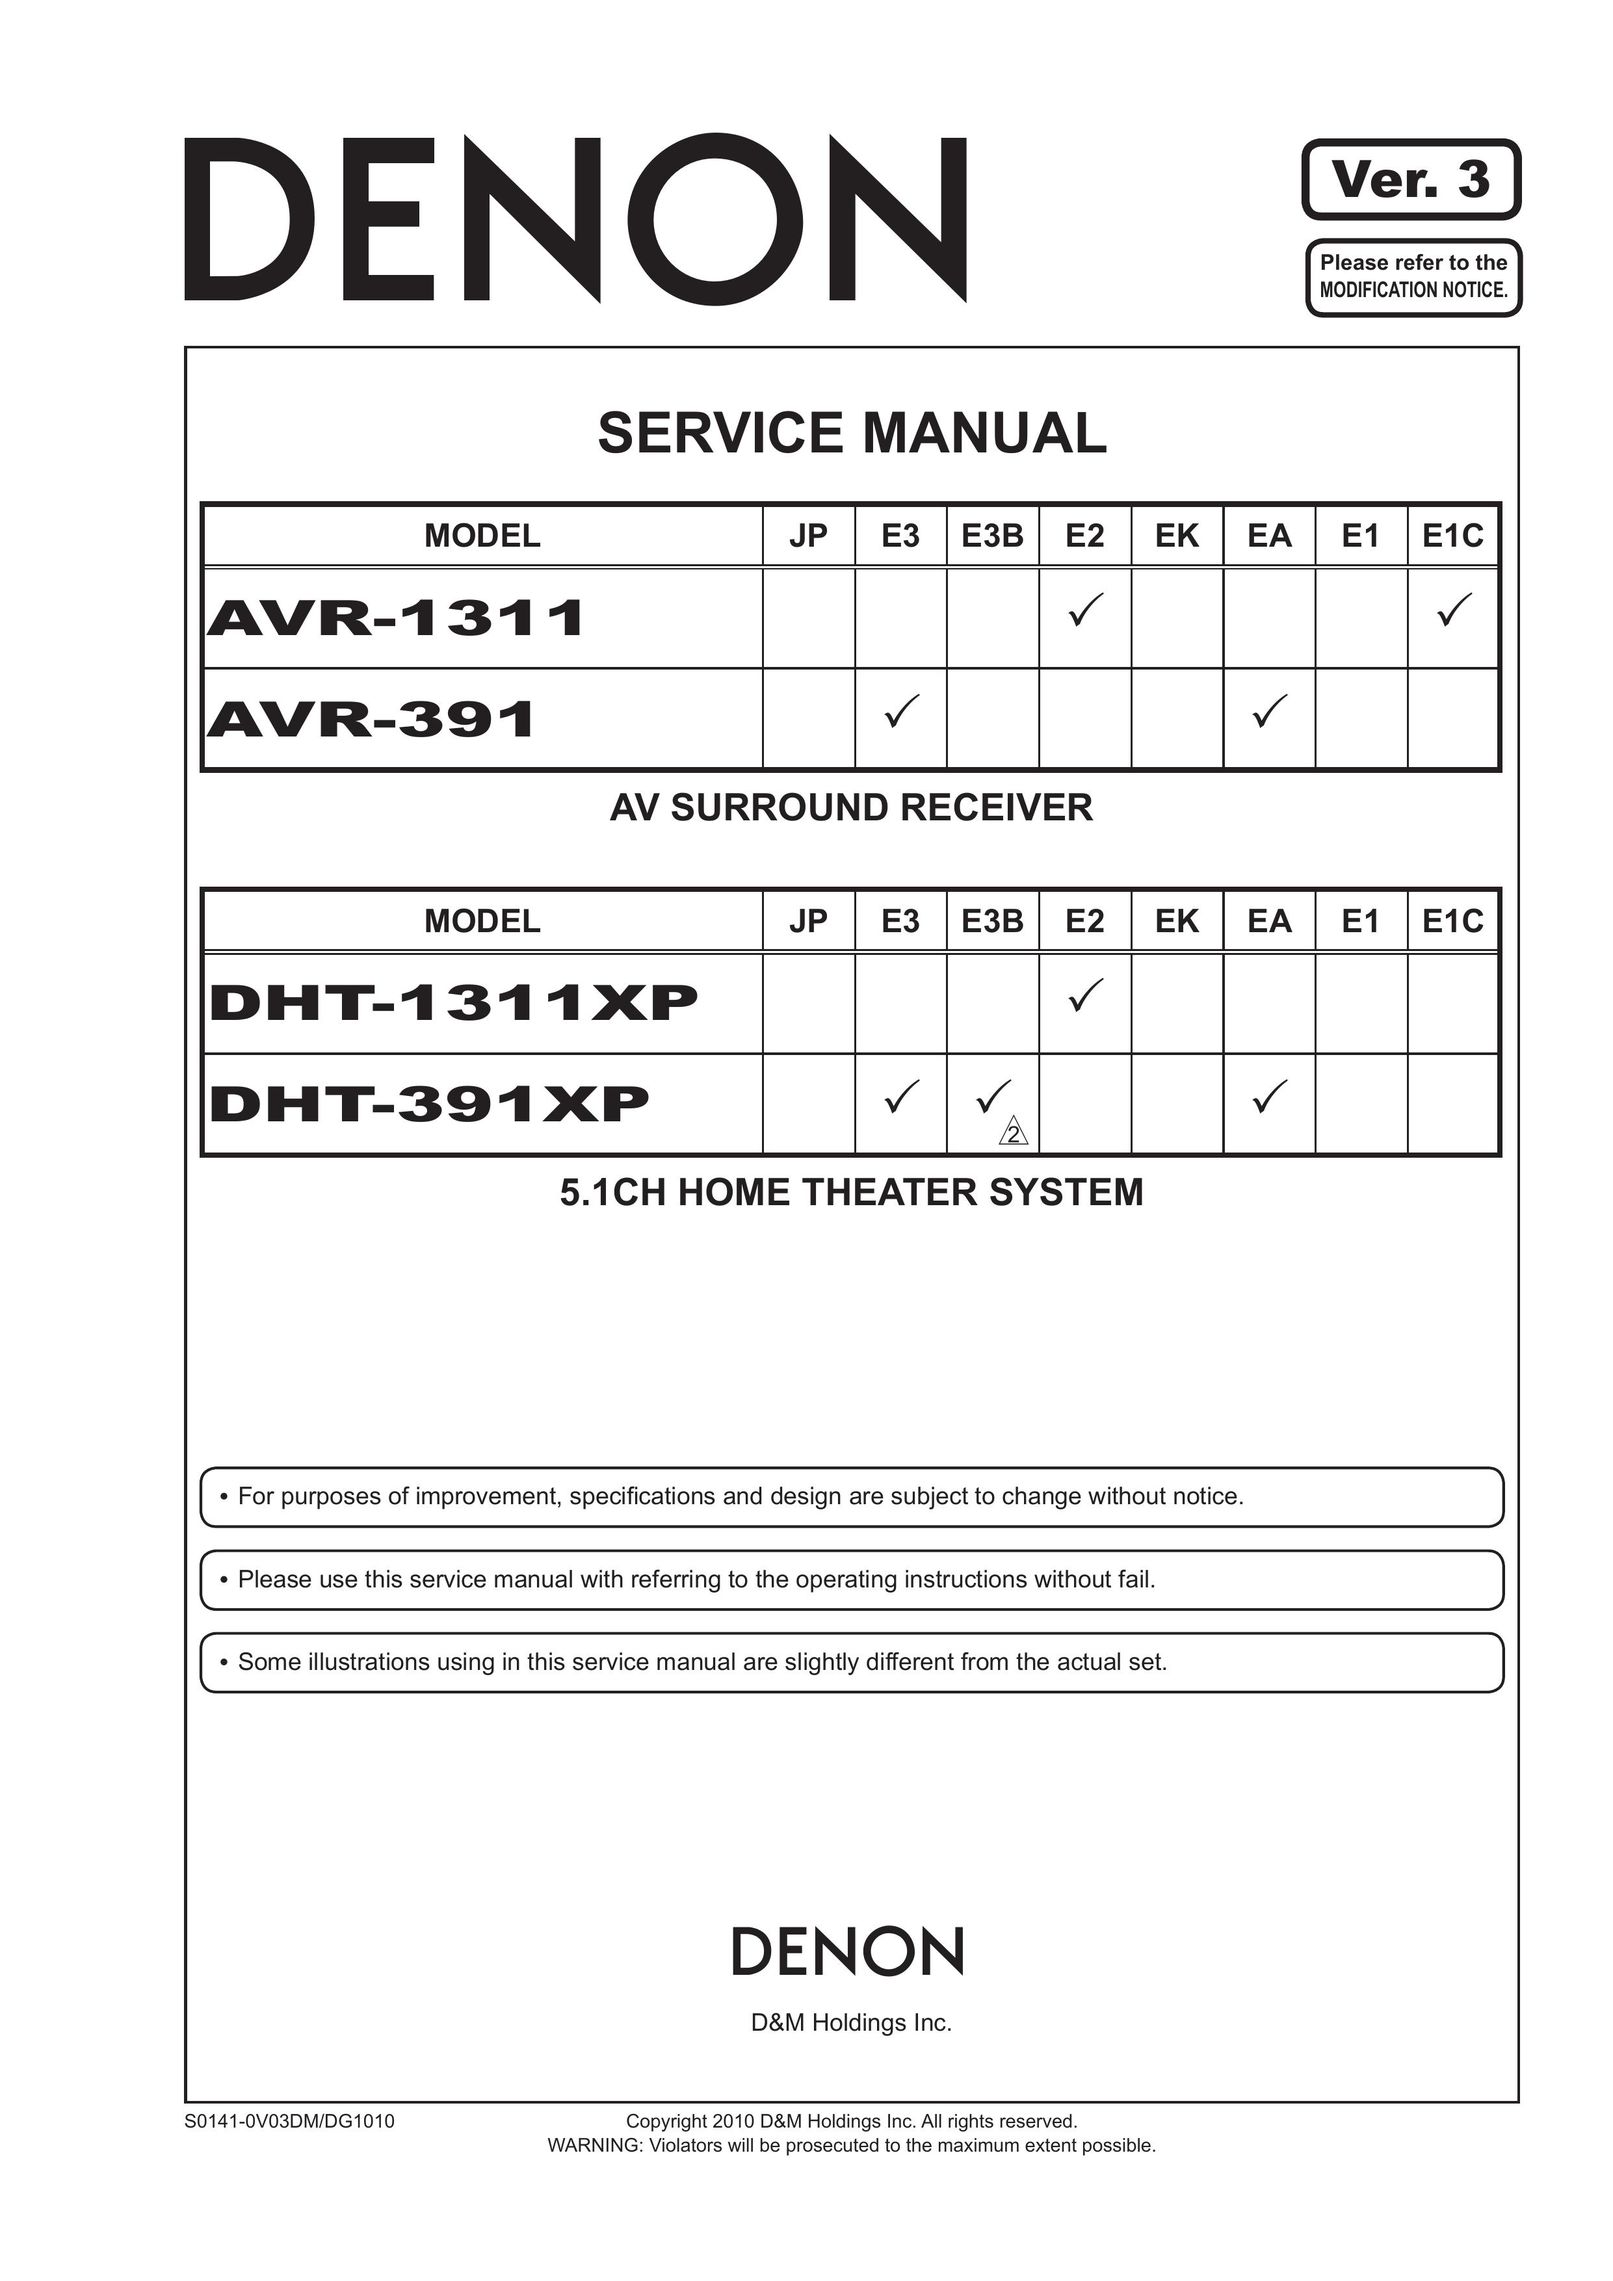 Denon DHT-1311XP DVD Player User Manual